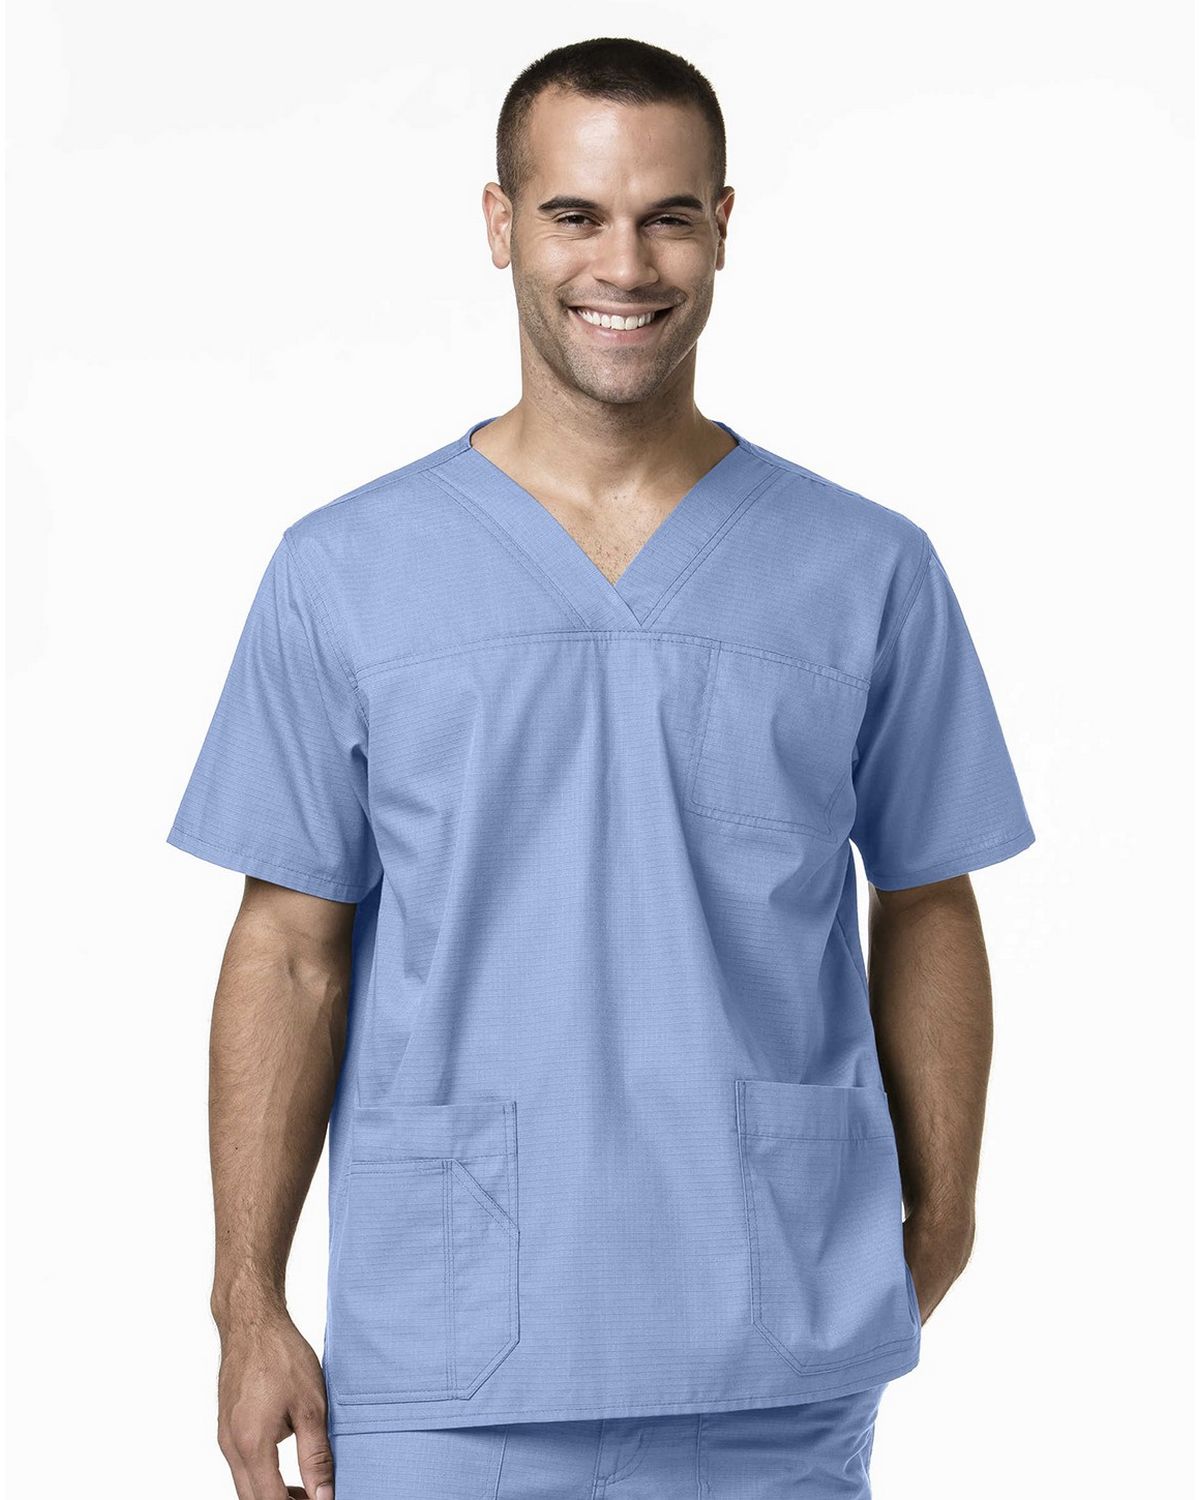 Hospital Doctor Nurse & Staff Scrub Shirt Adult XL Green New w/Tag